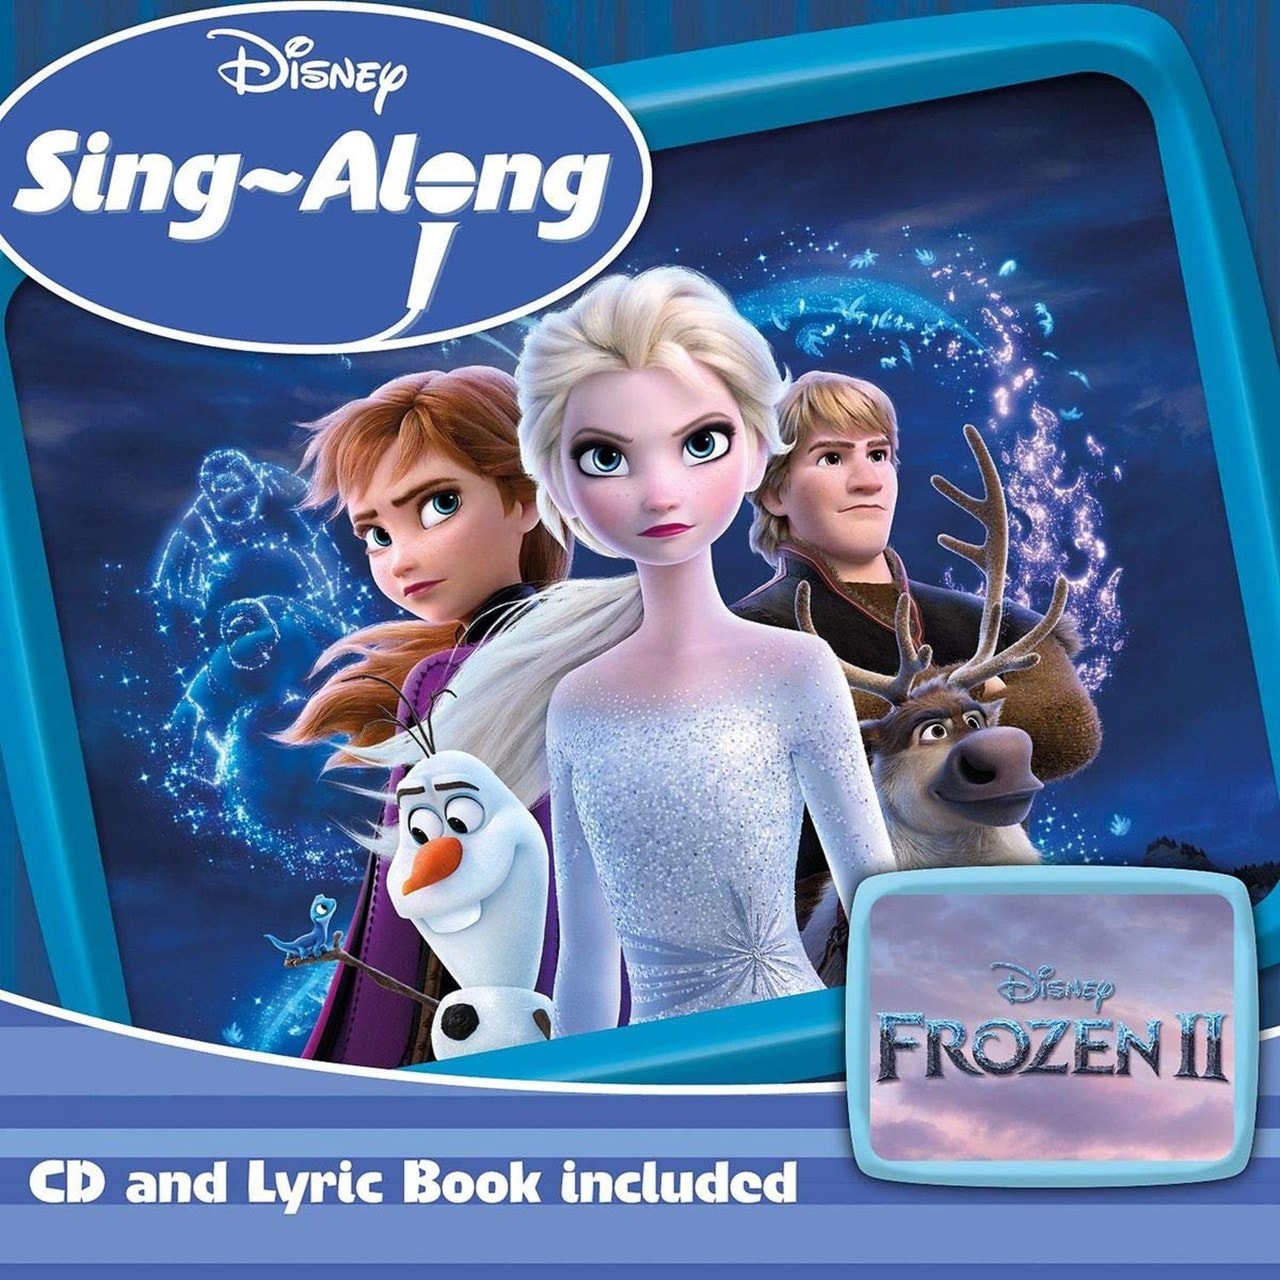  Frozen  II Disney  Sing along CD  Album Free shipping 